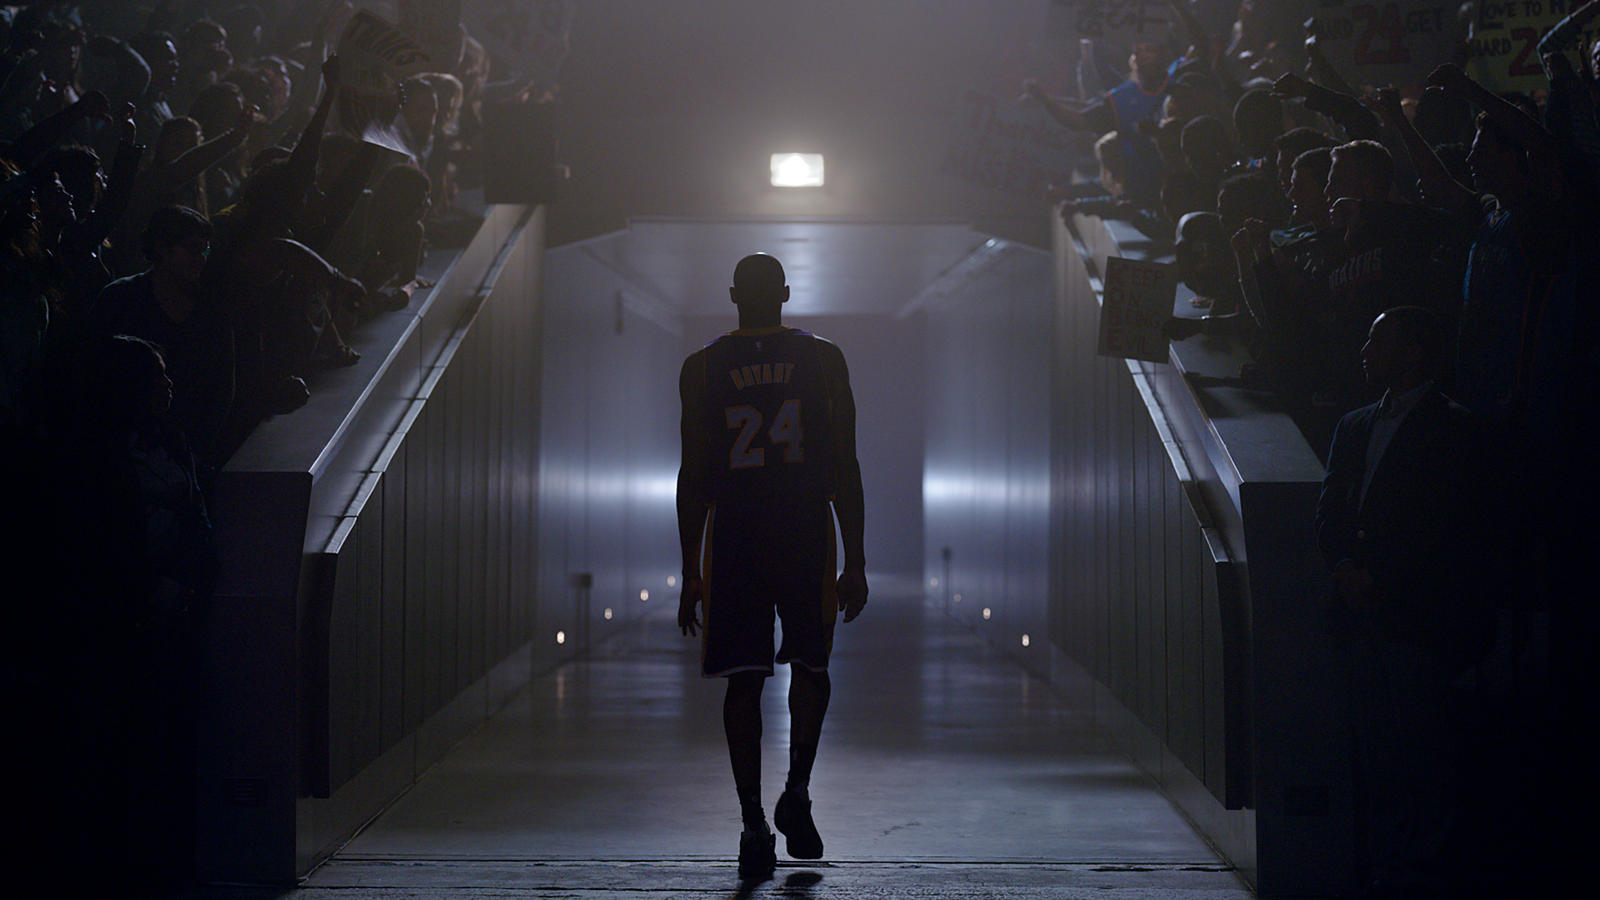 Kobe se despede de “sinfonia de haters” neste tributo perfeito da Nike